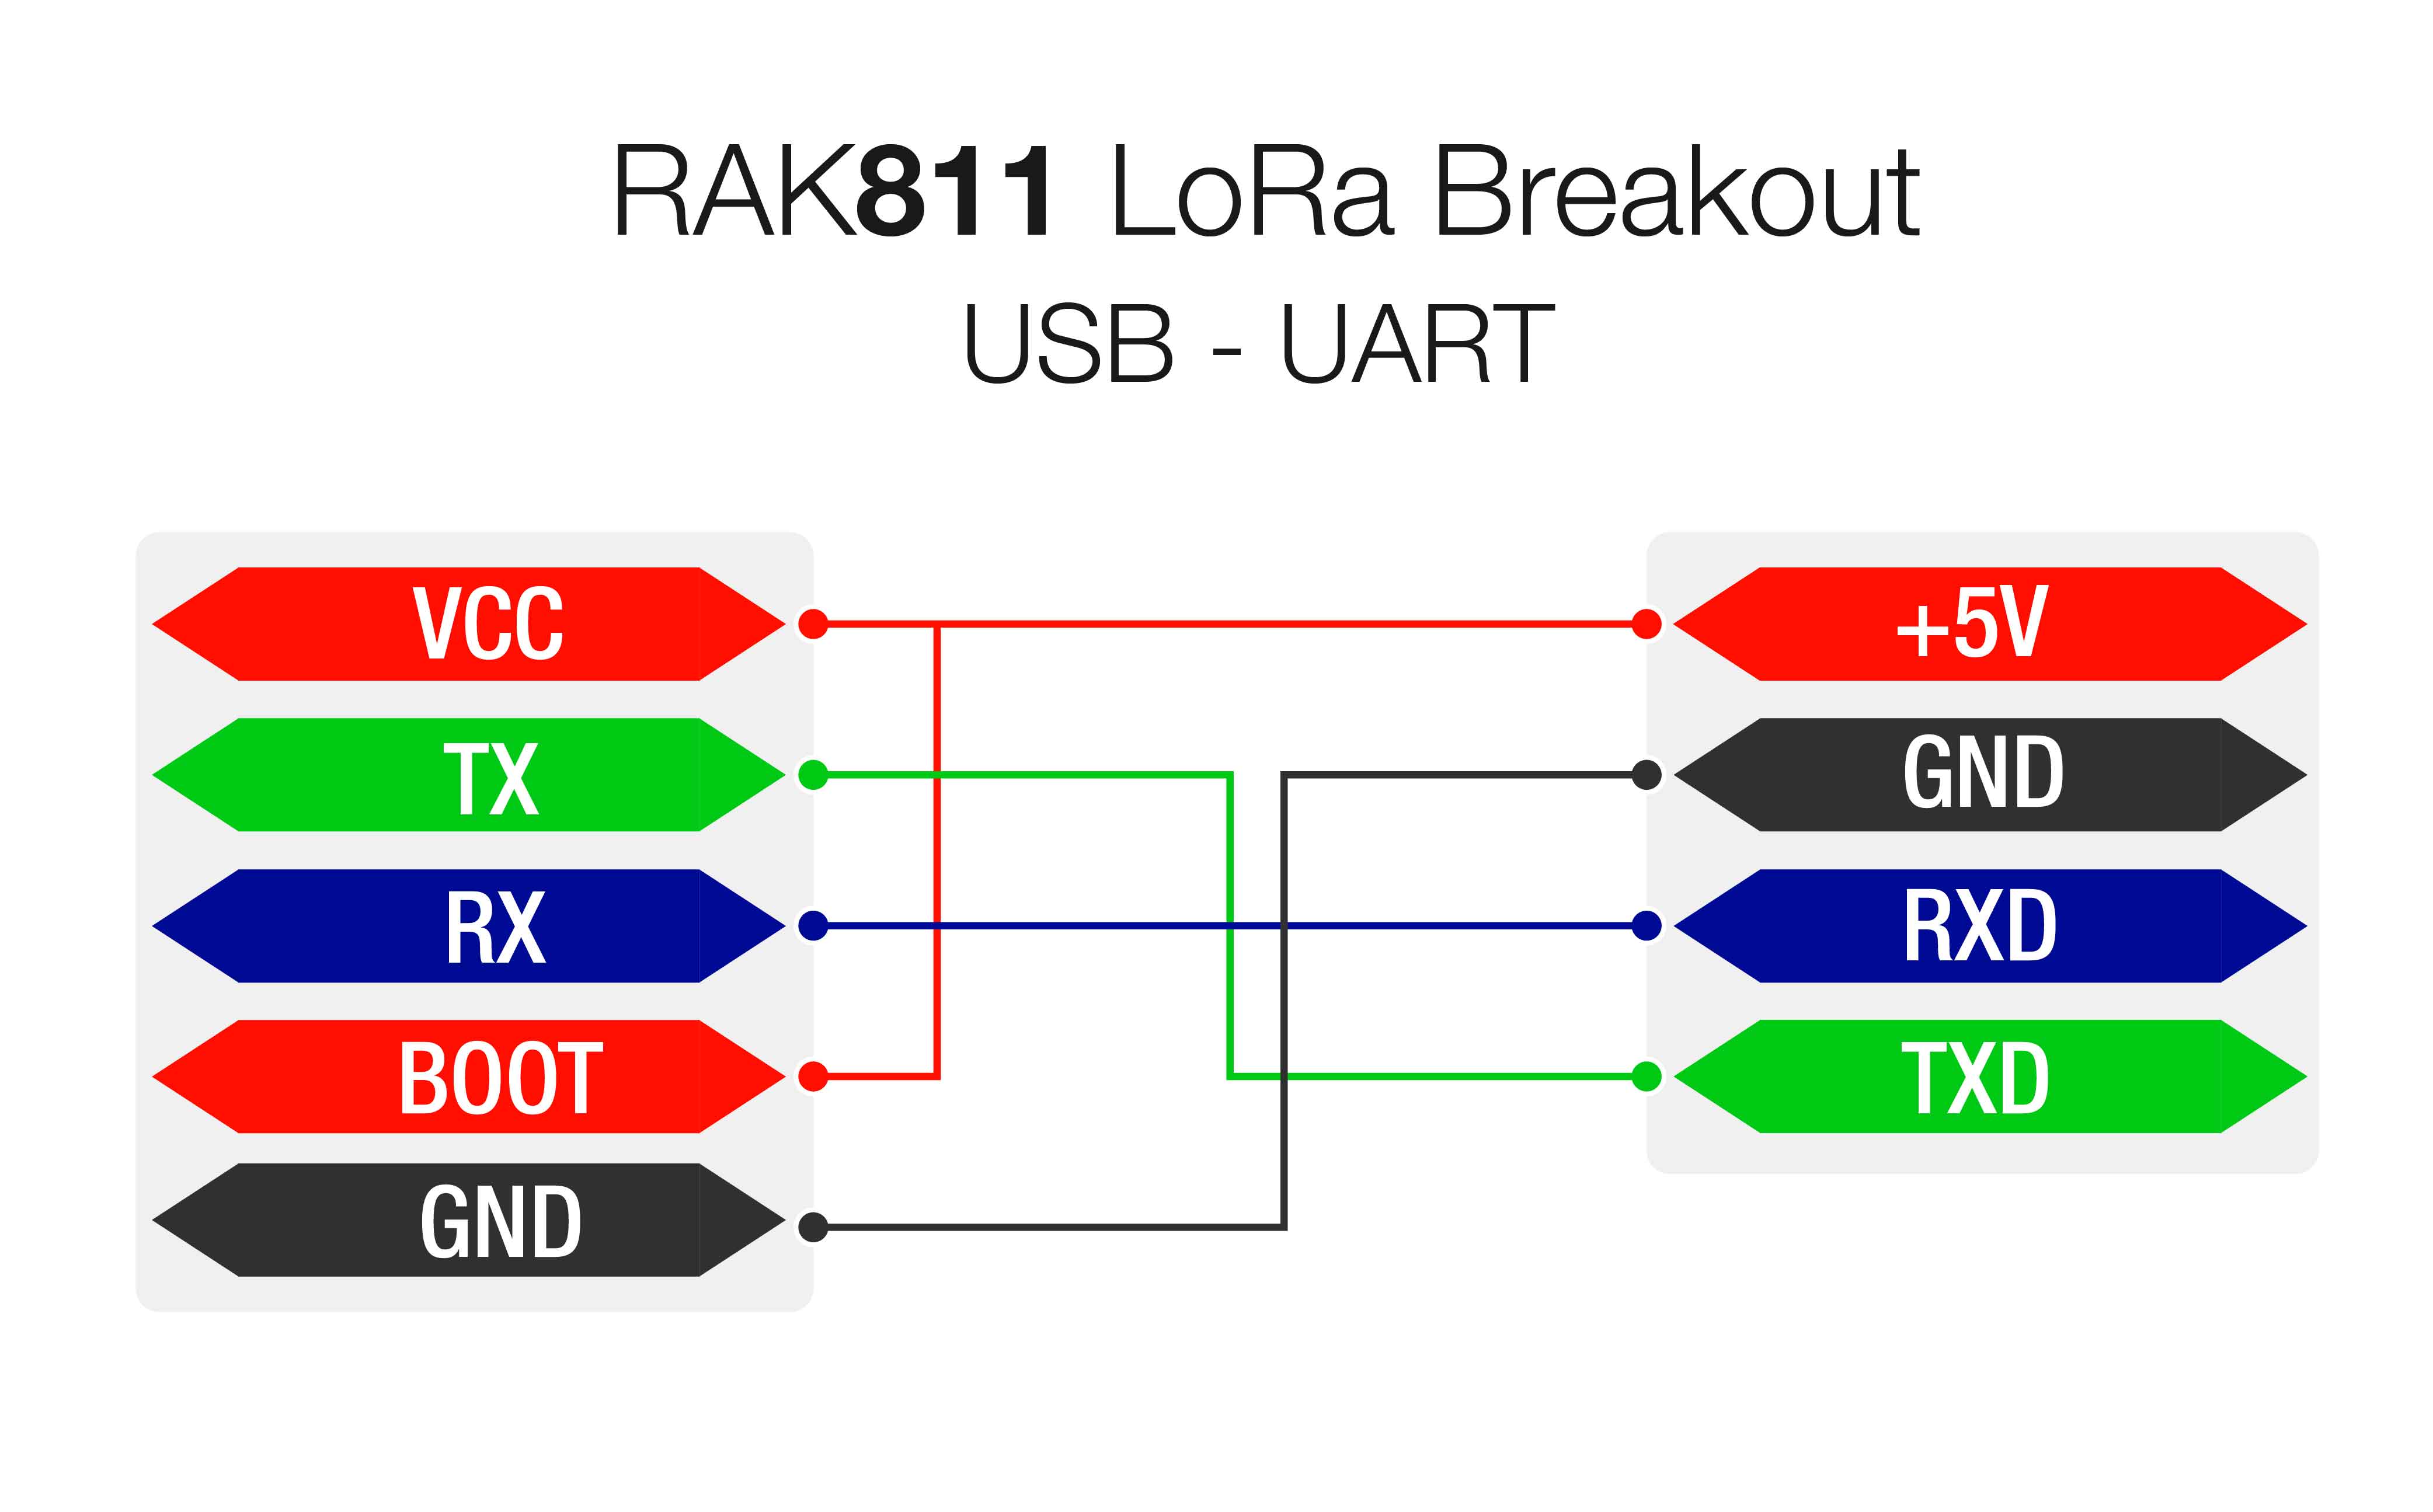 Figure 2: USB-UART